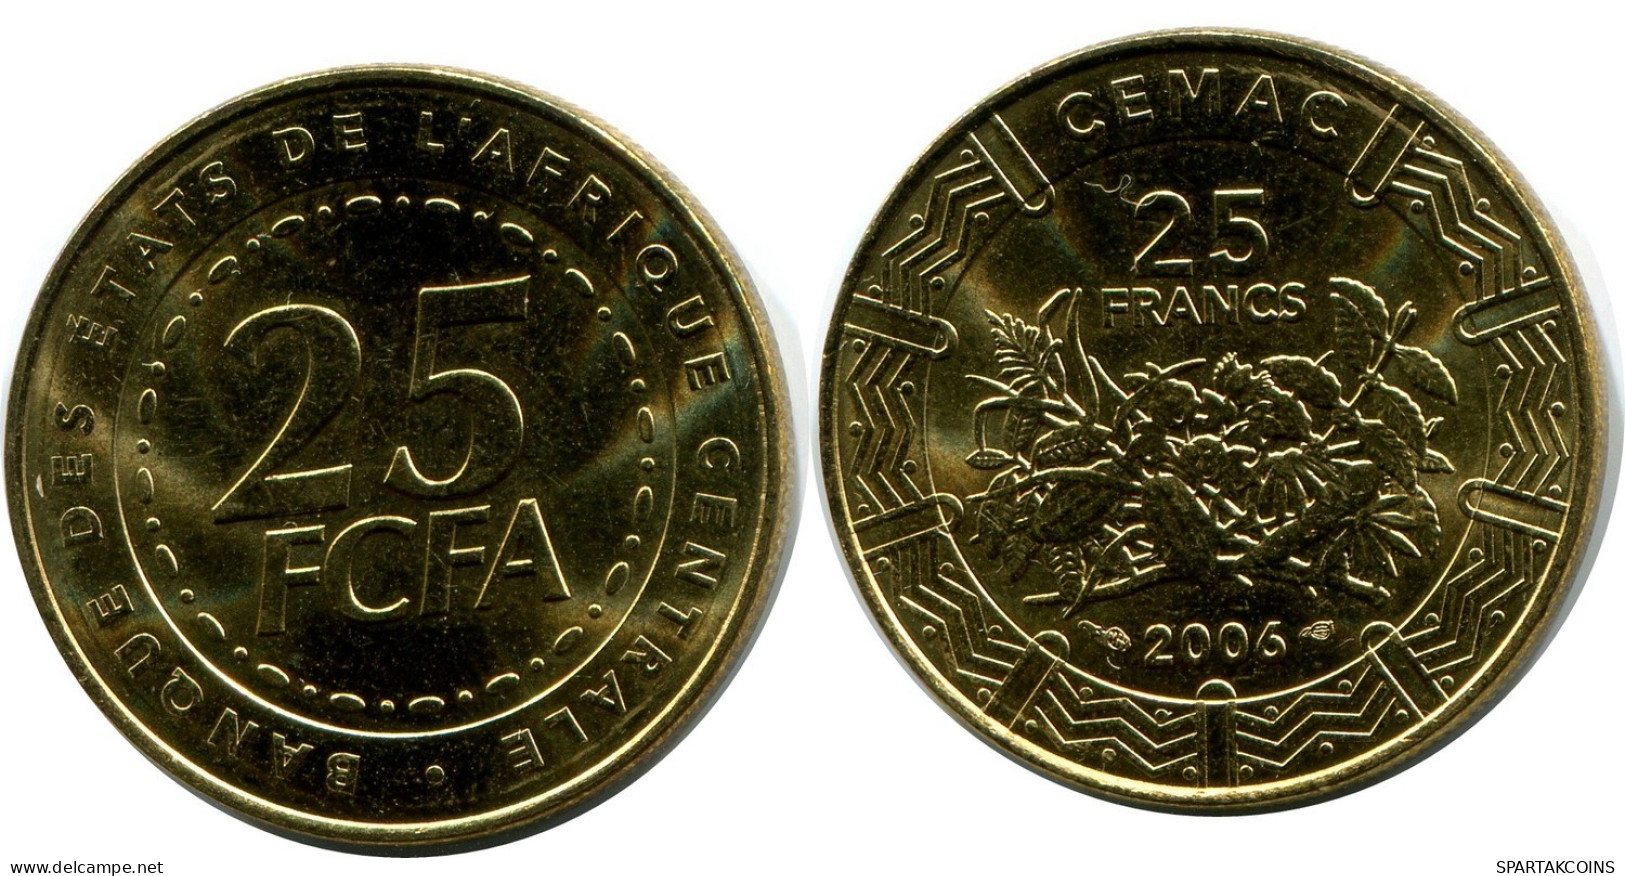 25 FRANCS CFA 2006 ESTADOS DE ÁFRICA CENTRAL (BEAC) Moneda #AP863.E.A - Central African Republic